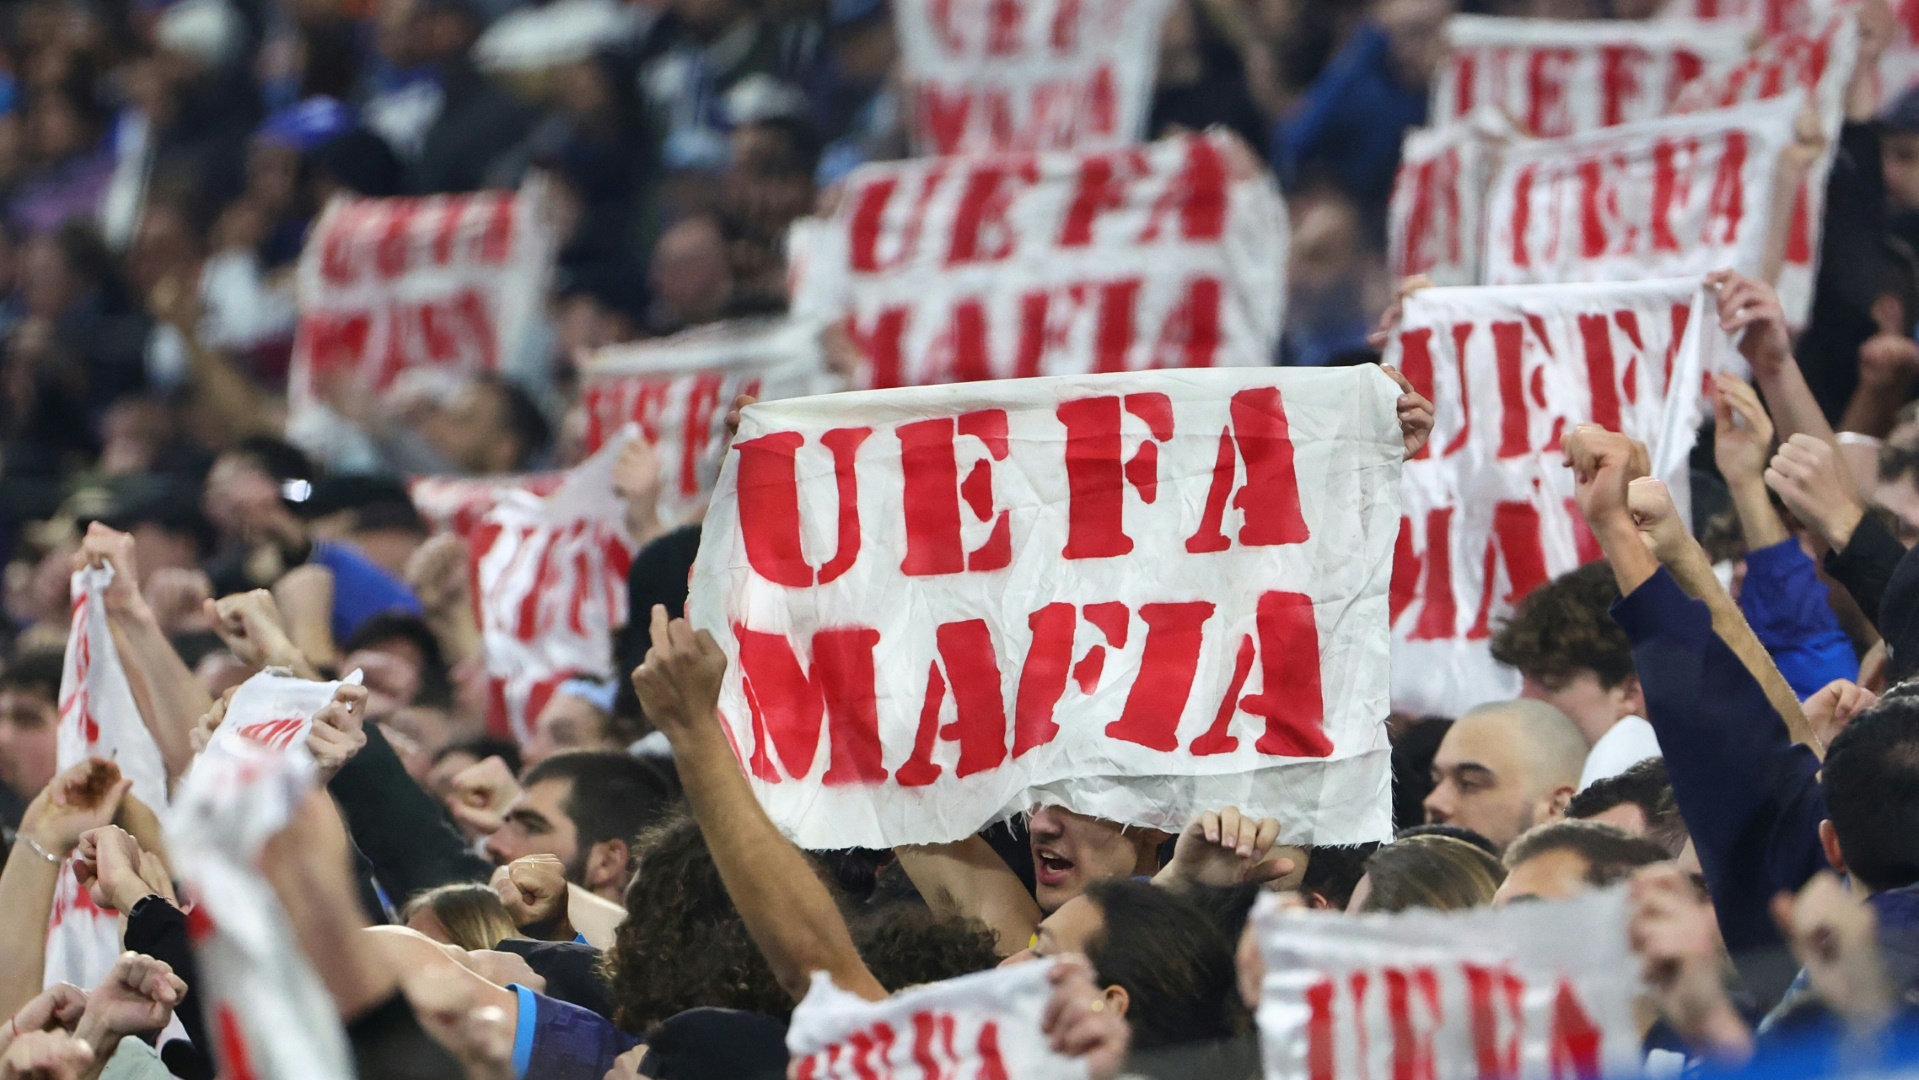 Auch in Marseille hieß es kürzlich: "UEFA Mafia"